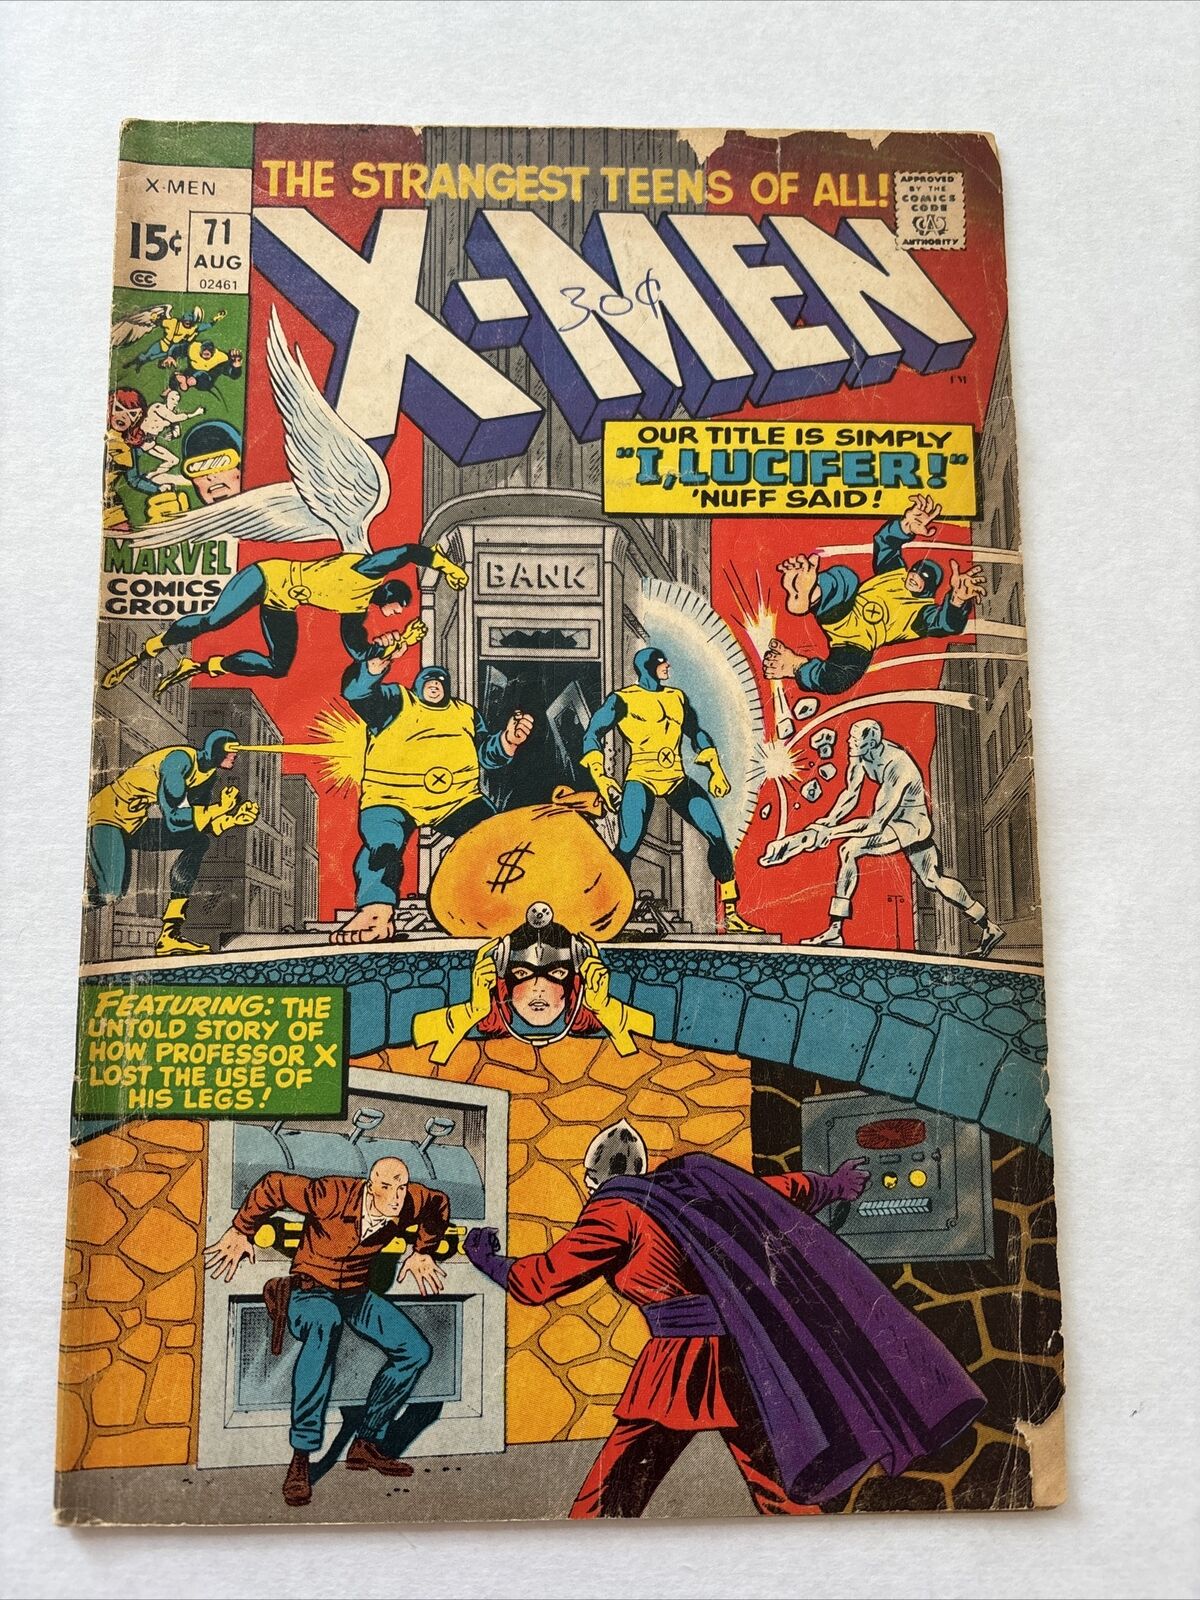 UNCANNY X-MEN #71 August 1971 Marvel Comics Vintage